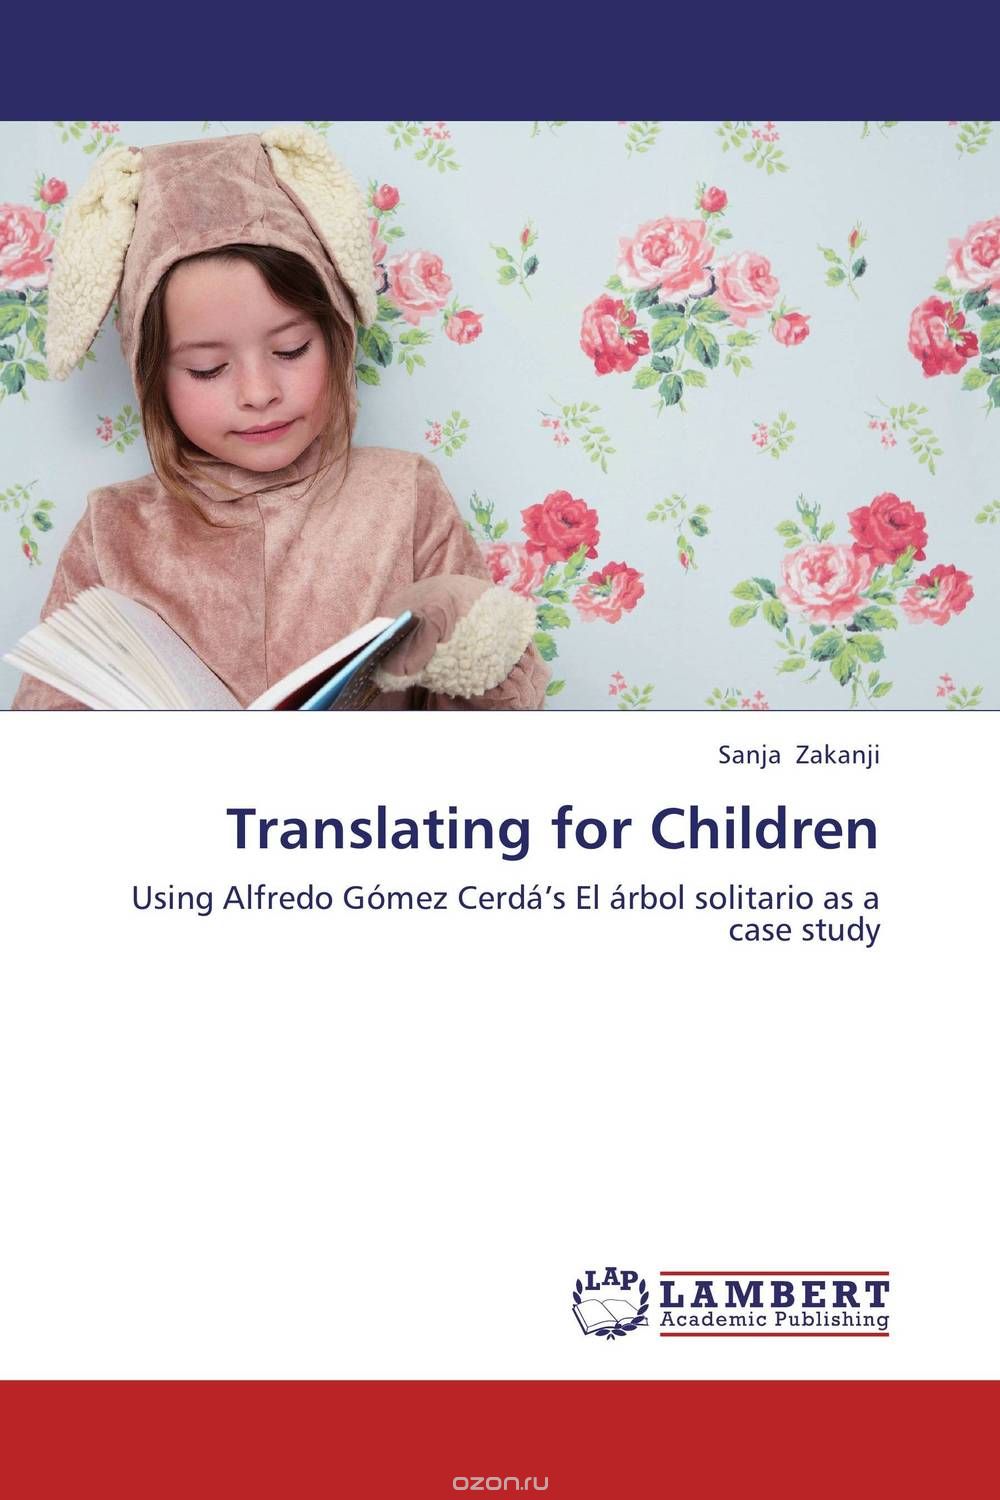 Скачать книгу "Translating for Children"